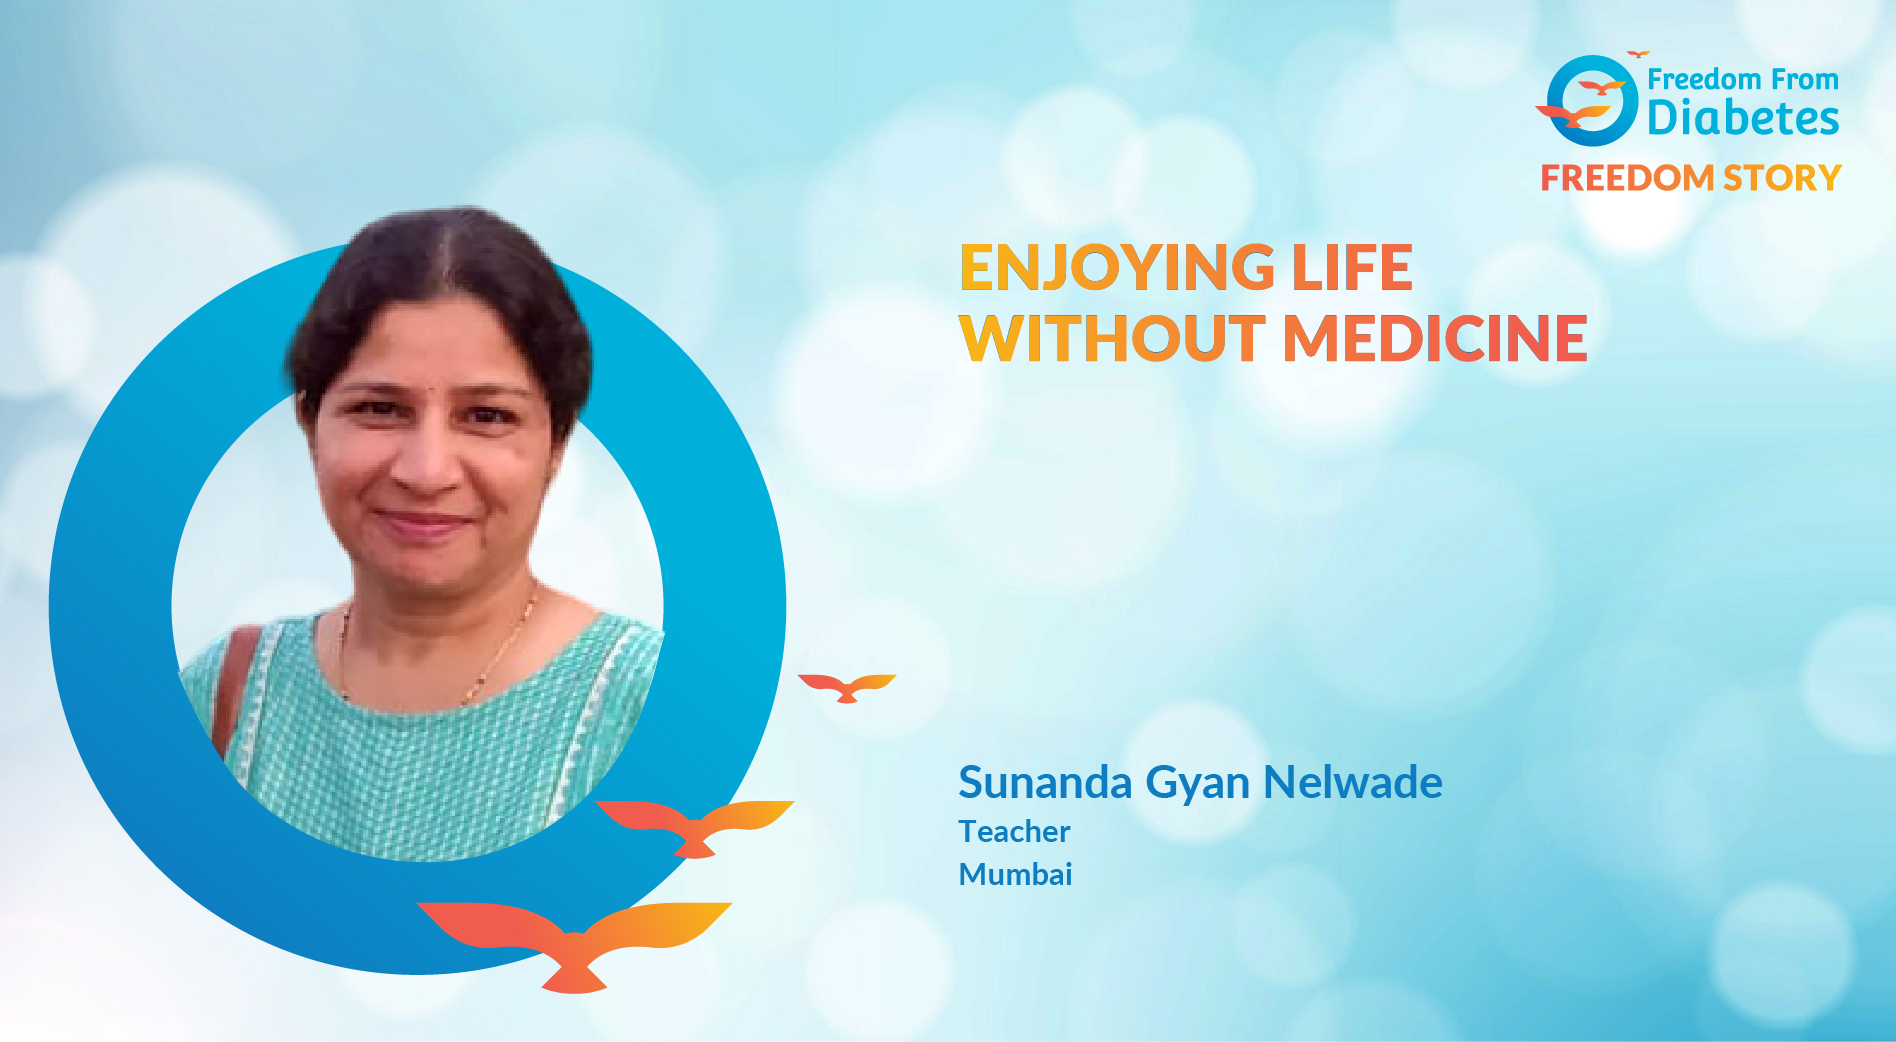 Sunanda Gyan Nelwade: Meet Sunanda 2.0